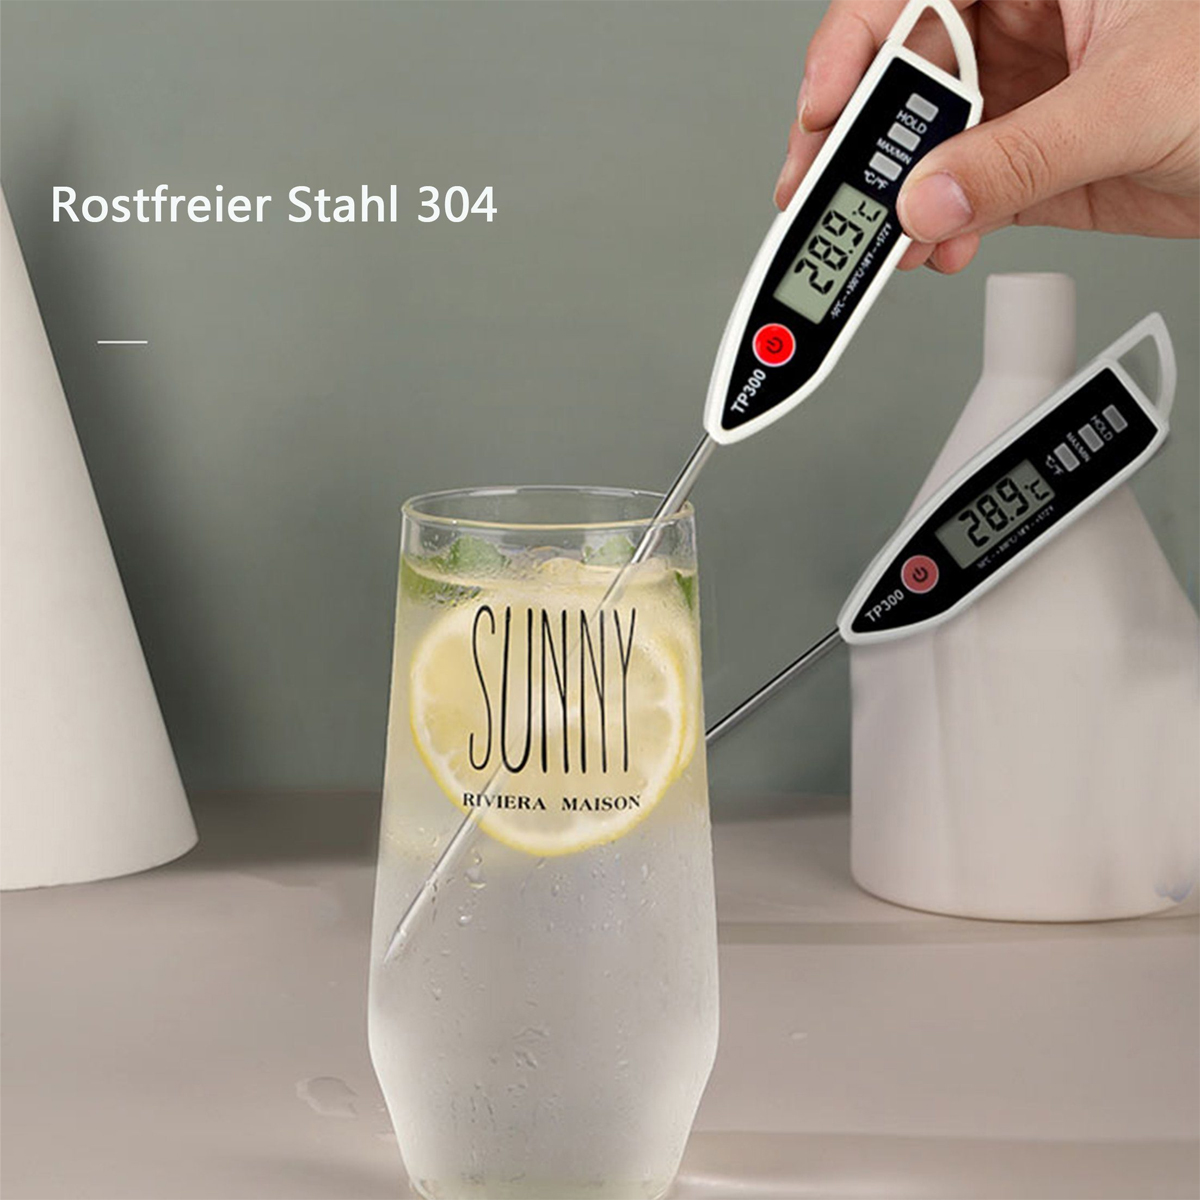 KÜLER Sondenthermometer, BBQ-Thermometer, für Flüssigkeit, Paste Wassertemperatur, Fleischthermometer